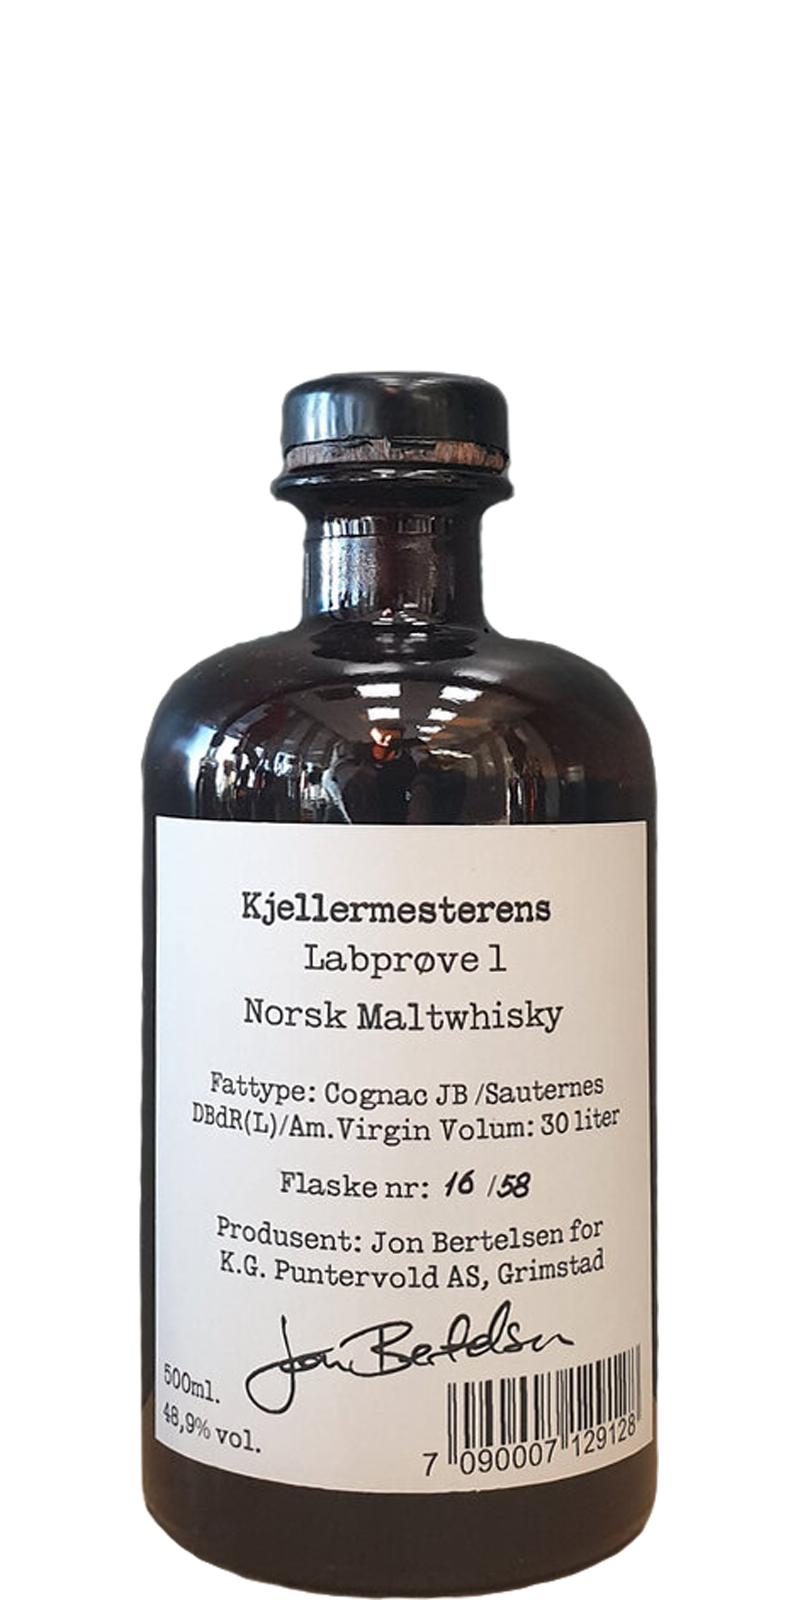 Kjellermesterens Labprove 1 Norsk Maltwhisky 48.9% 500ml